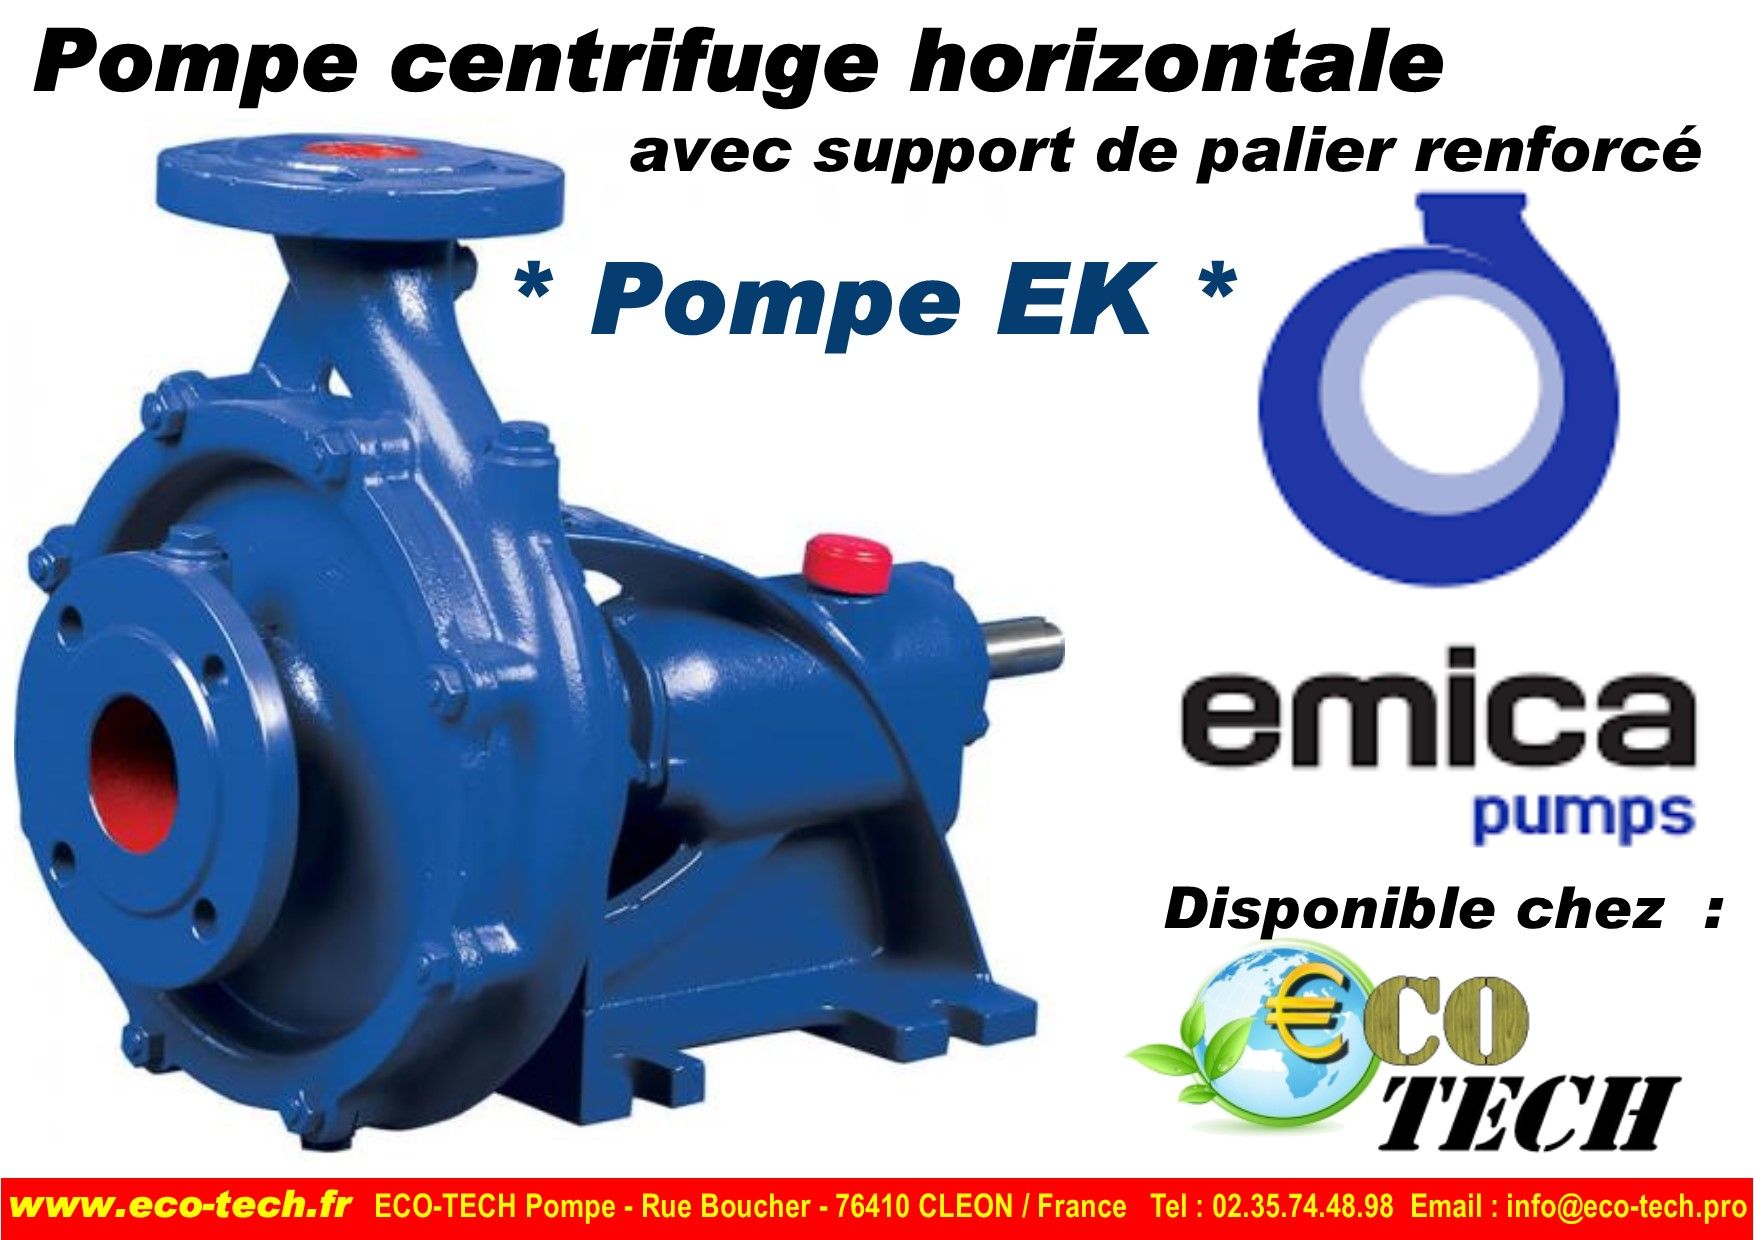 Pompe emica centrifuge horizontale support de palier renforcé france normandie_0